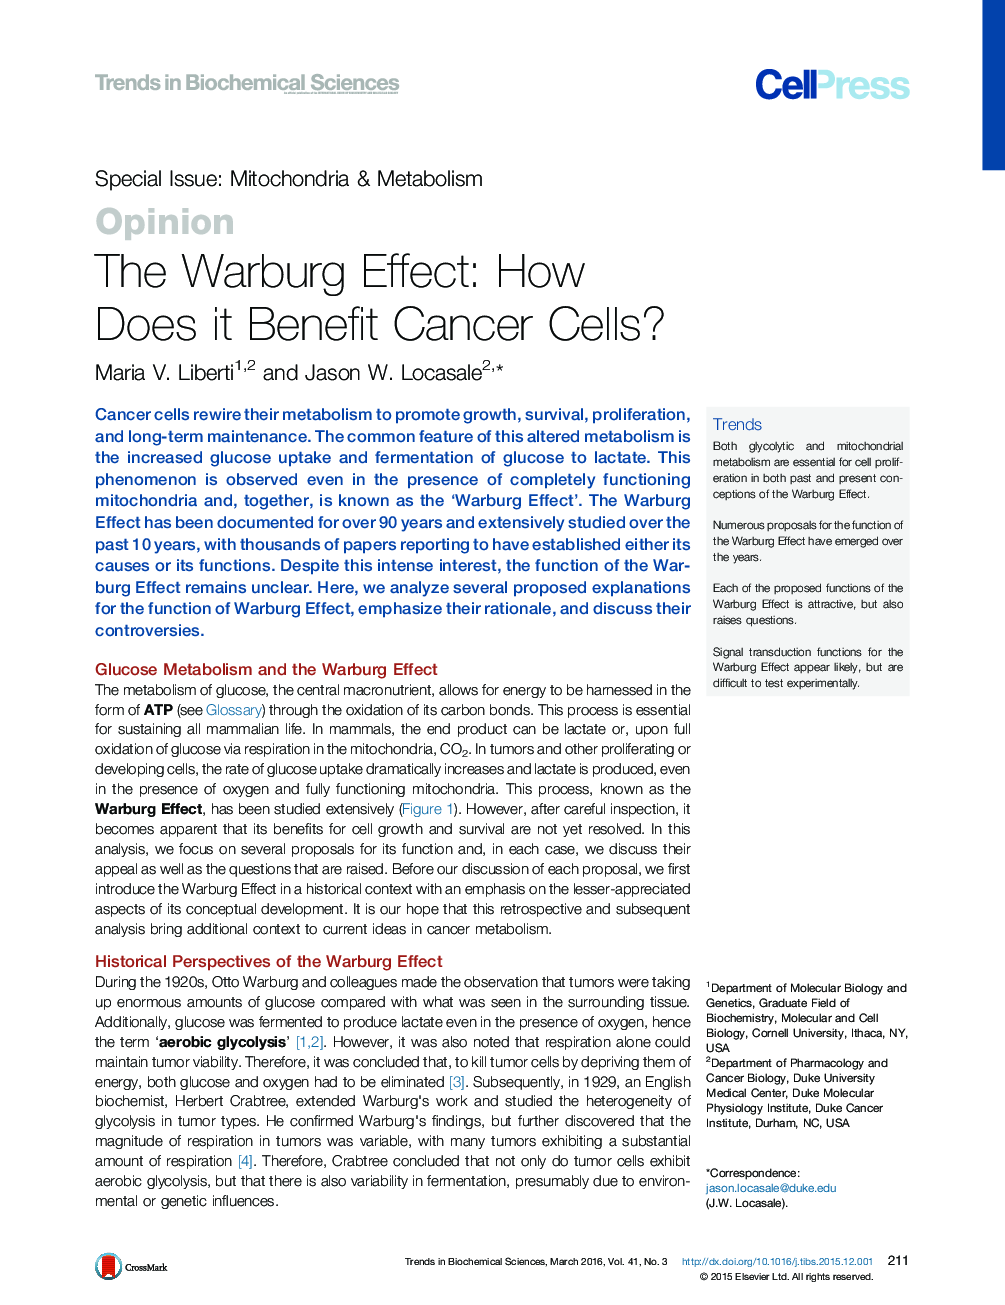 اثر واربورگ: چگونه سلول های سرطانی را به خطر می اندازد؟ 